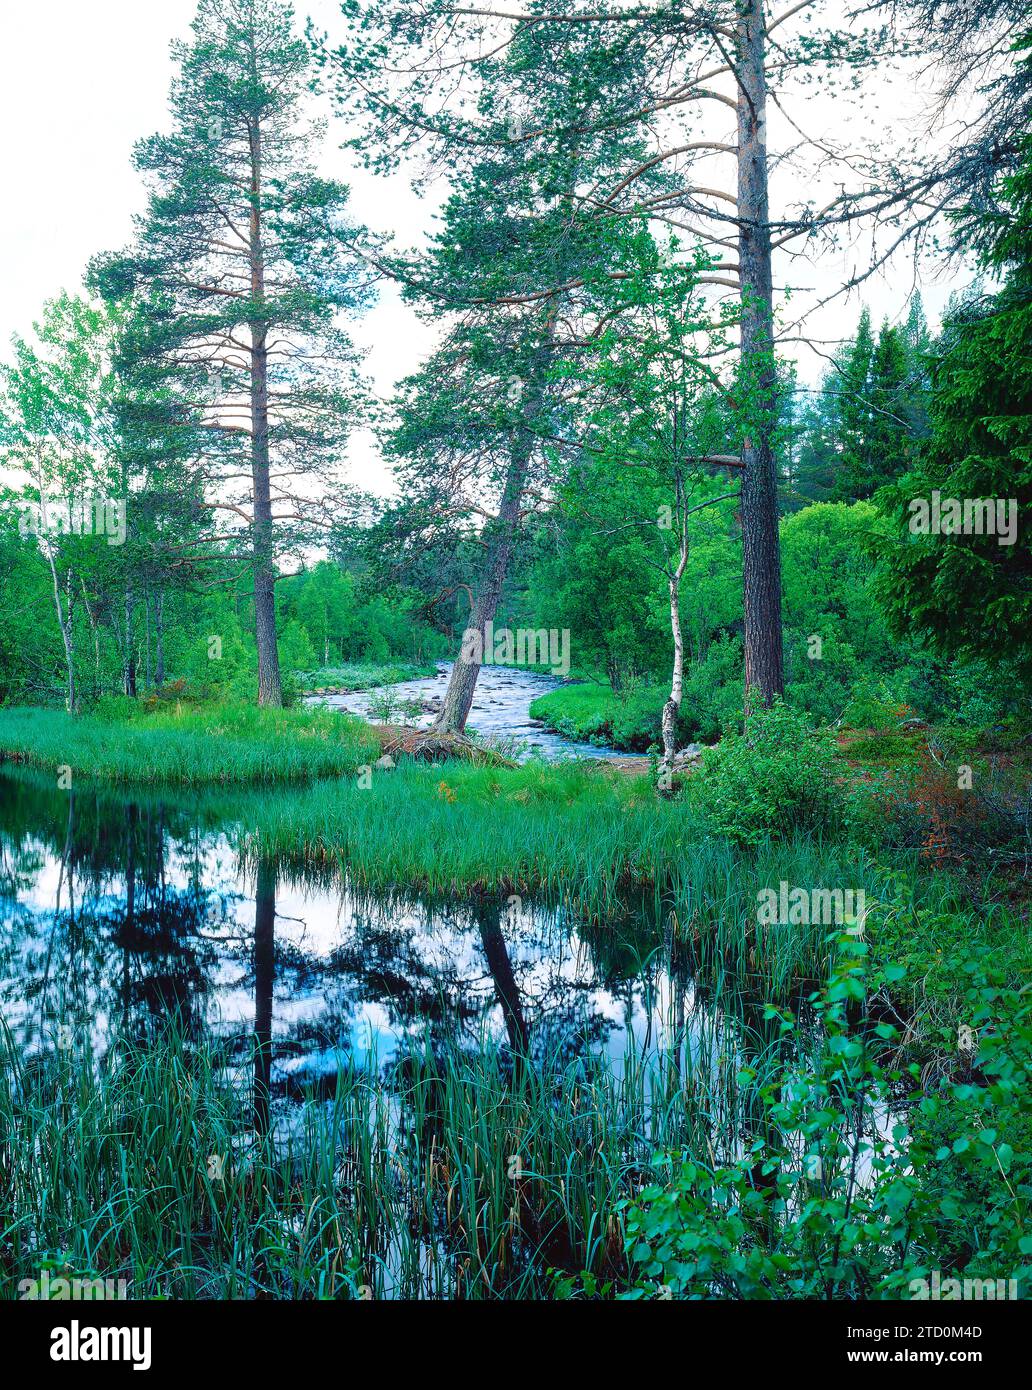 Wetland in Sweden Stock Photo